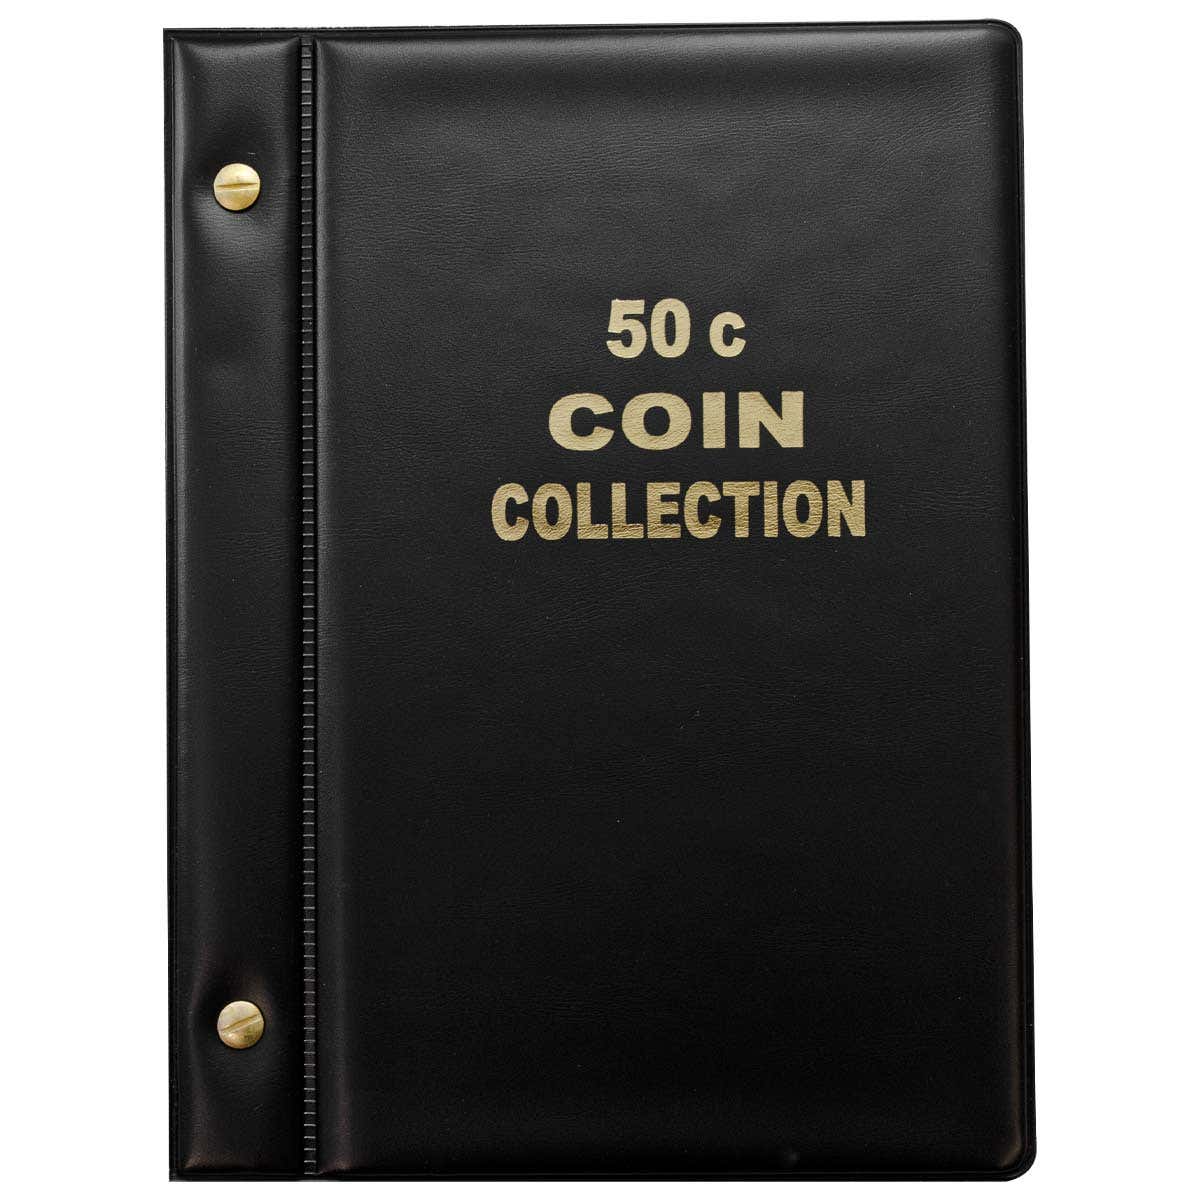 50c Coin Album